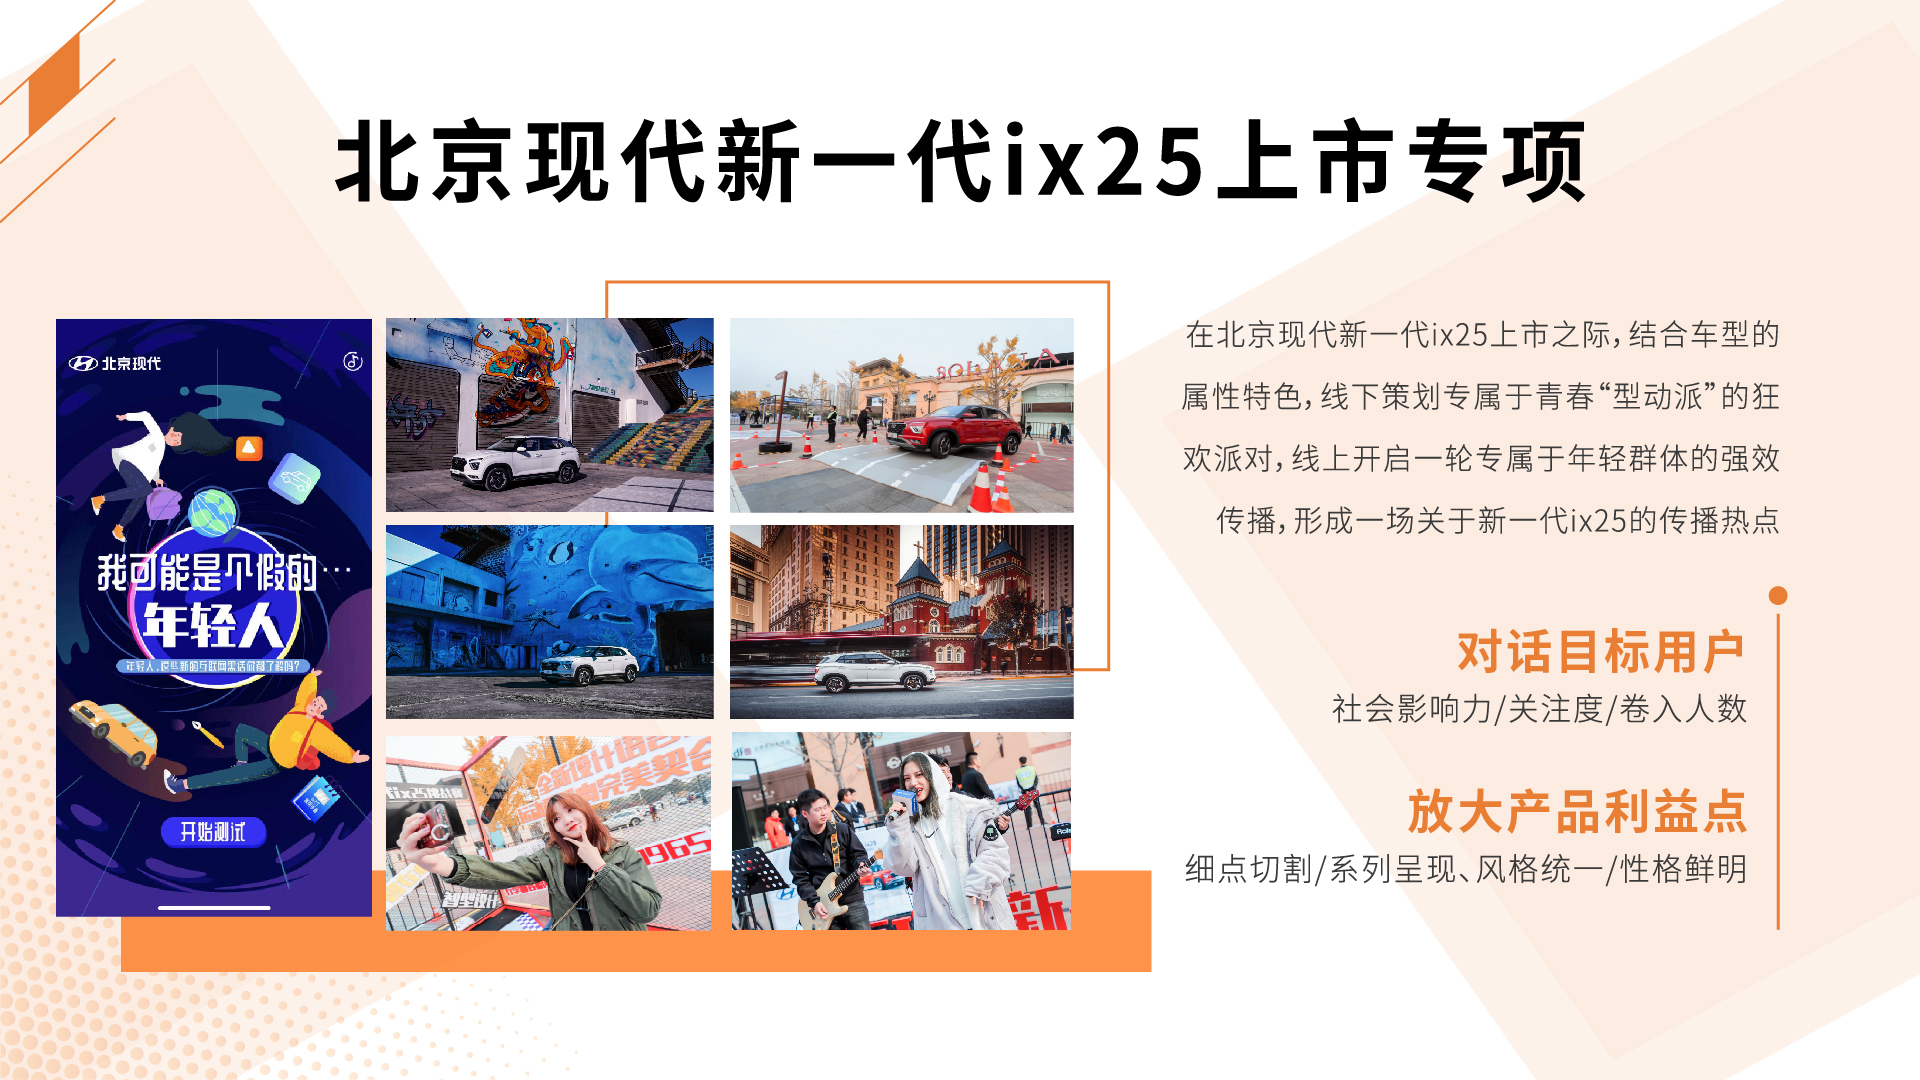 北京现代新一代ix25上市专项